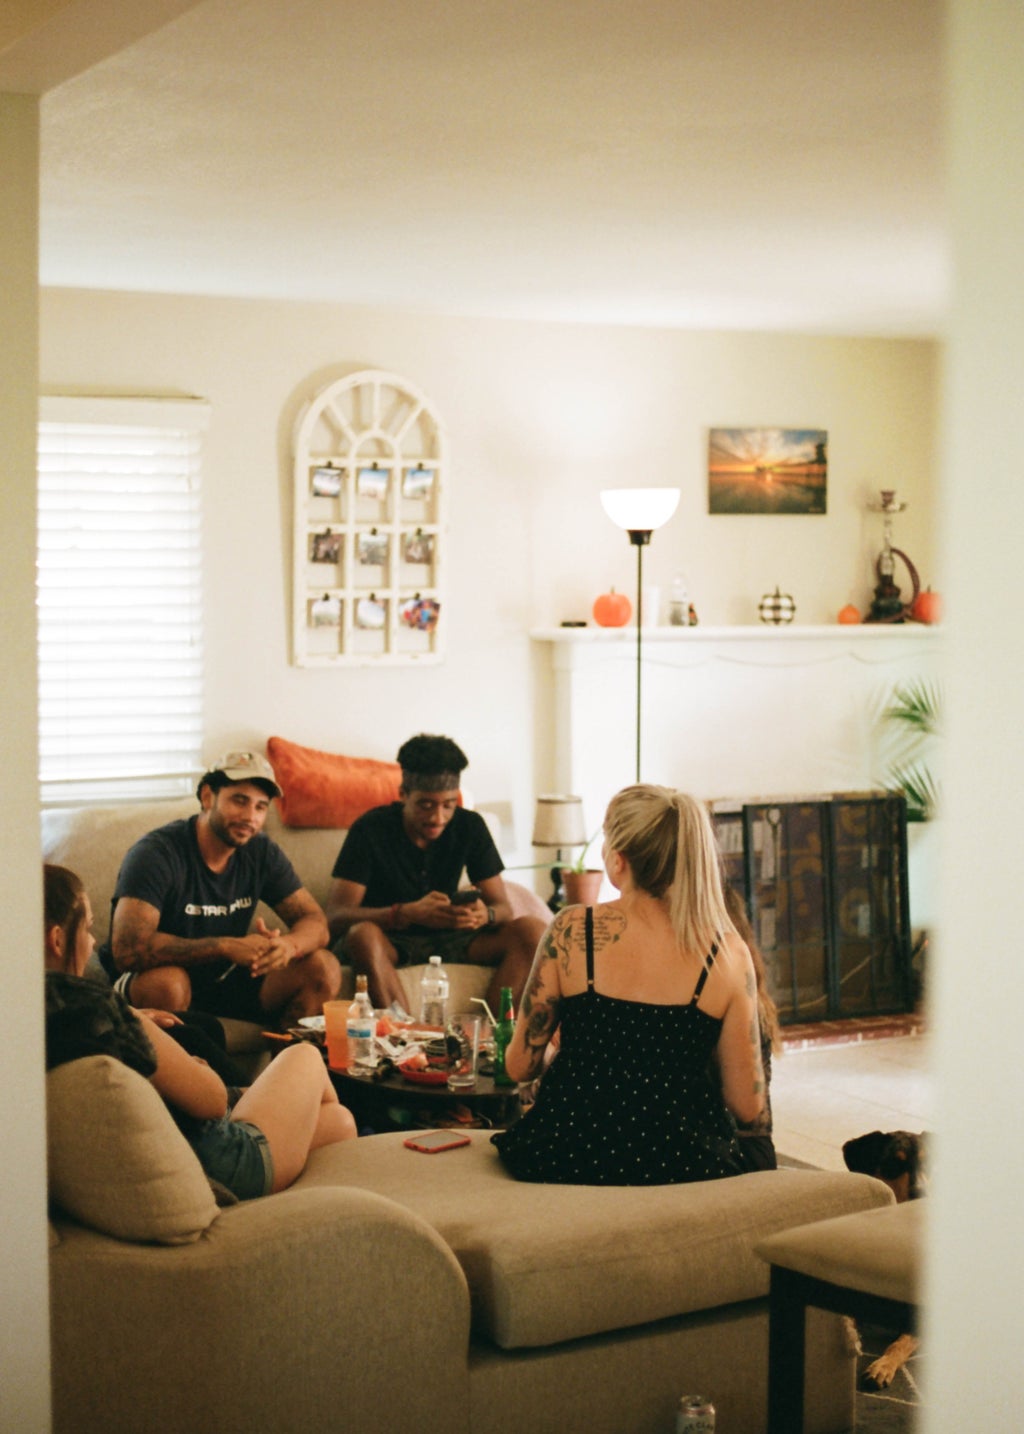 Group of people sitting in livingroom